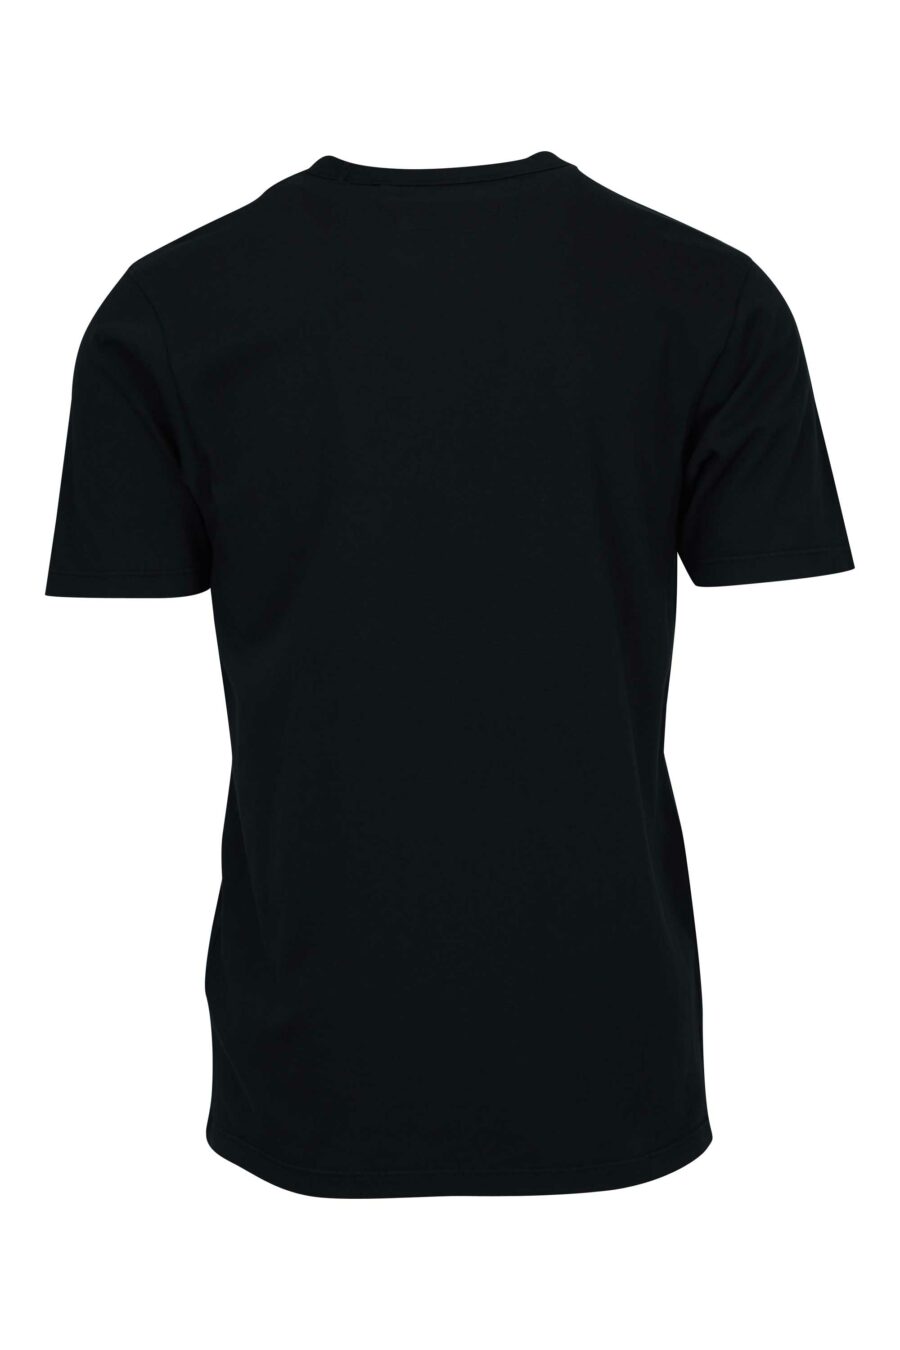 T-shirt noir avec poches et mini-logo "cp" - 7620943767025 1